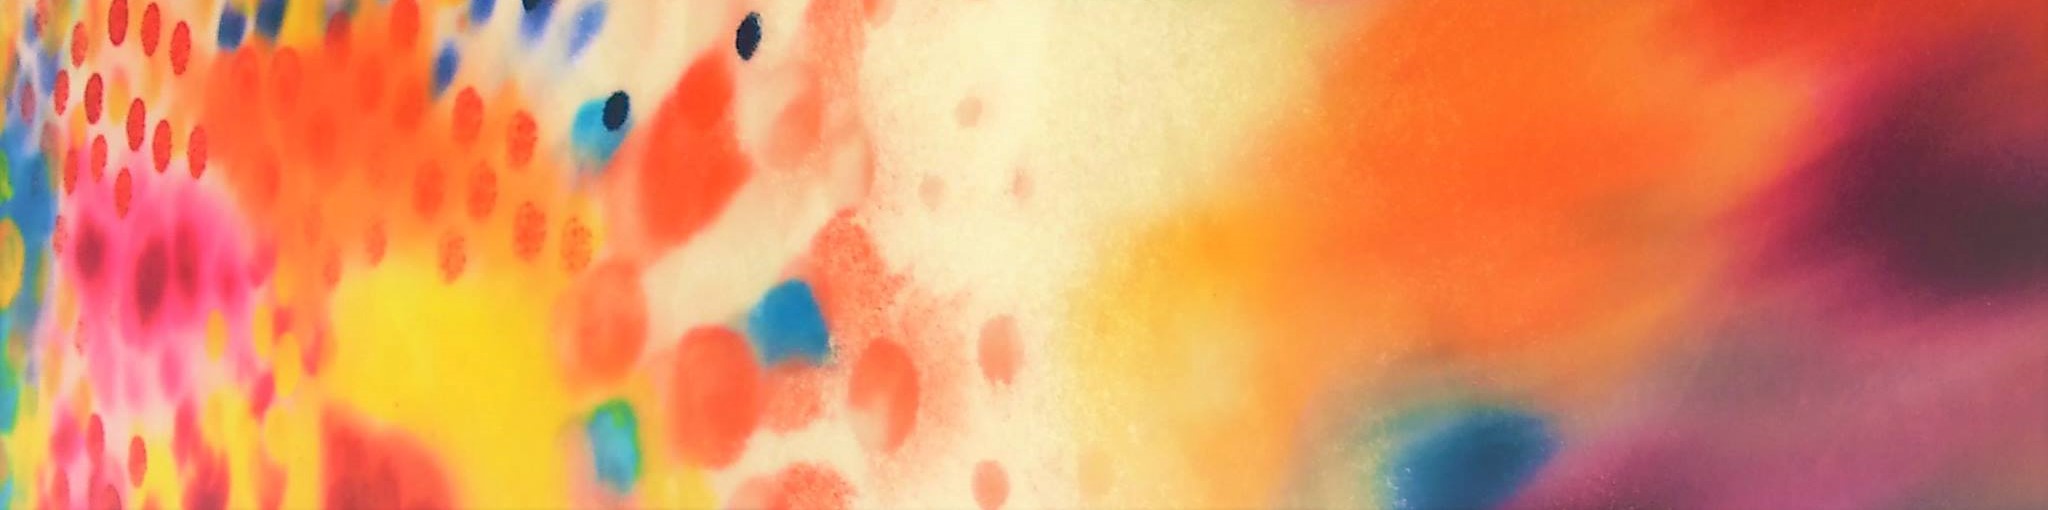 Helsinki-Rooma-Helsinki -taidematka verkossa Kuvassa värikäs tunnelmaa taidematkalla kuvastava abstrakti maalaus